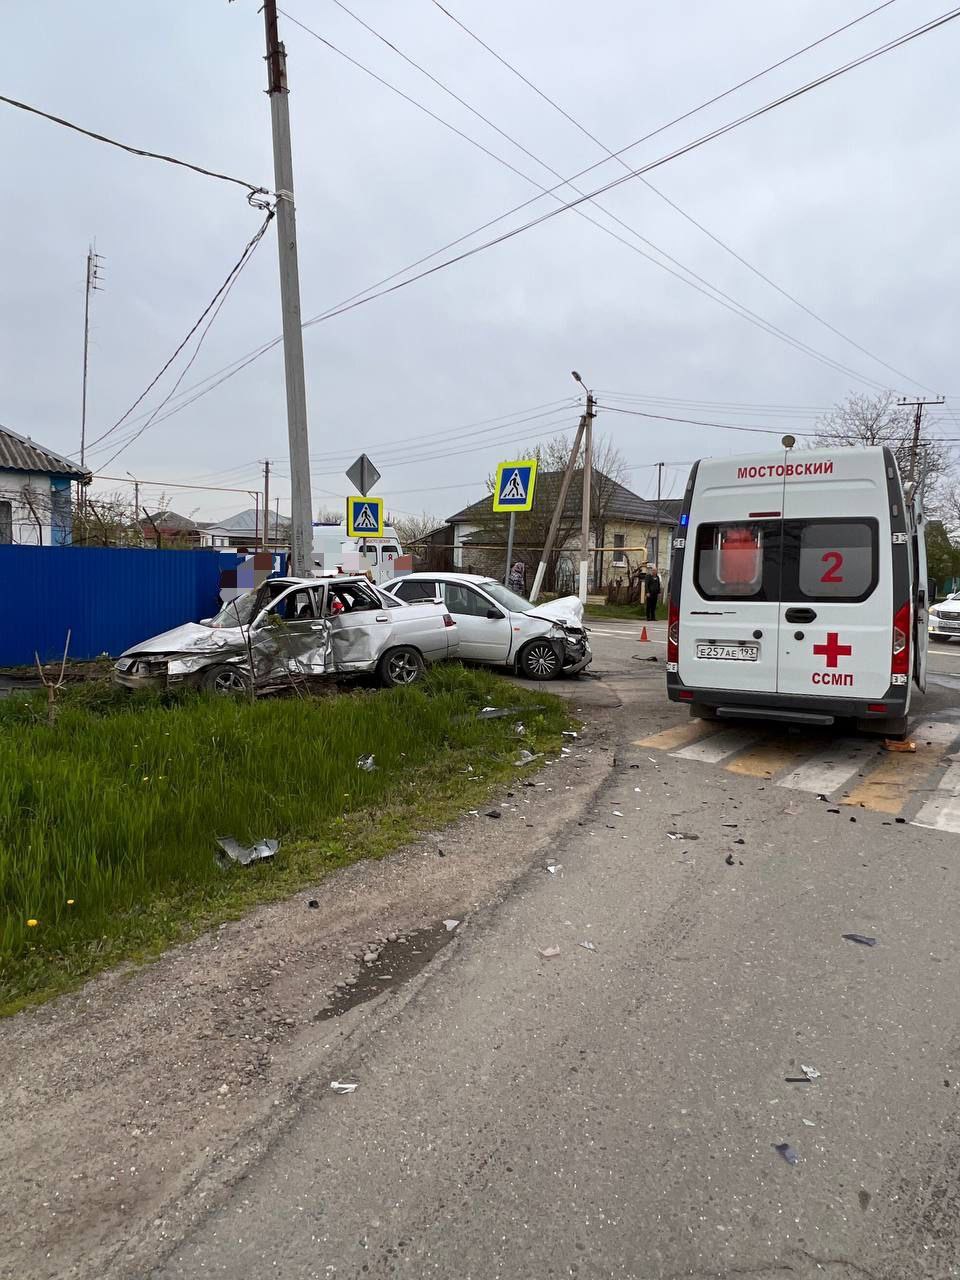 Один человек погиб и двое получили травмы в ДТП, которое произошло 11 апреля на пересечении улиц Горького и Трудовой в посёлке Мостовском 7